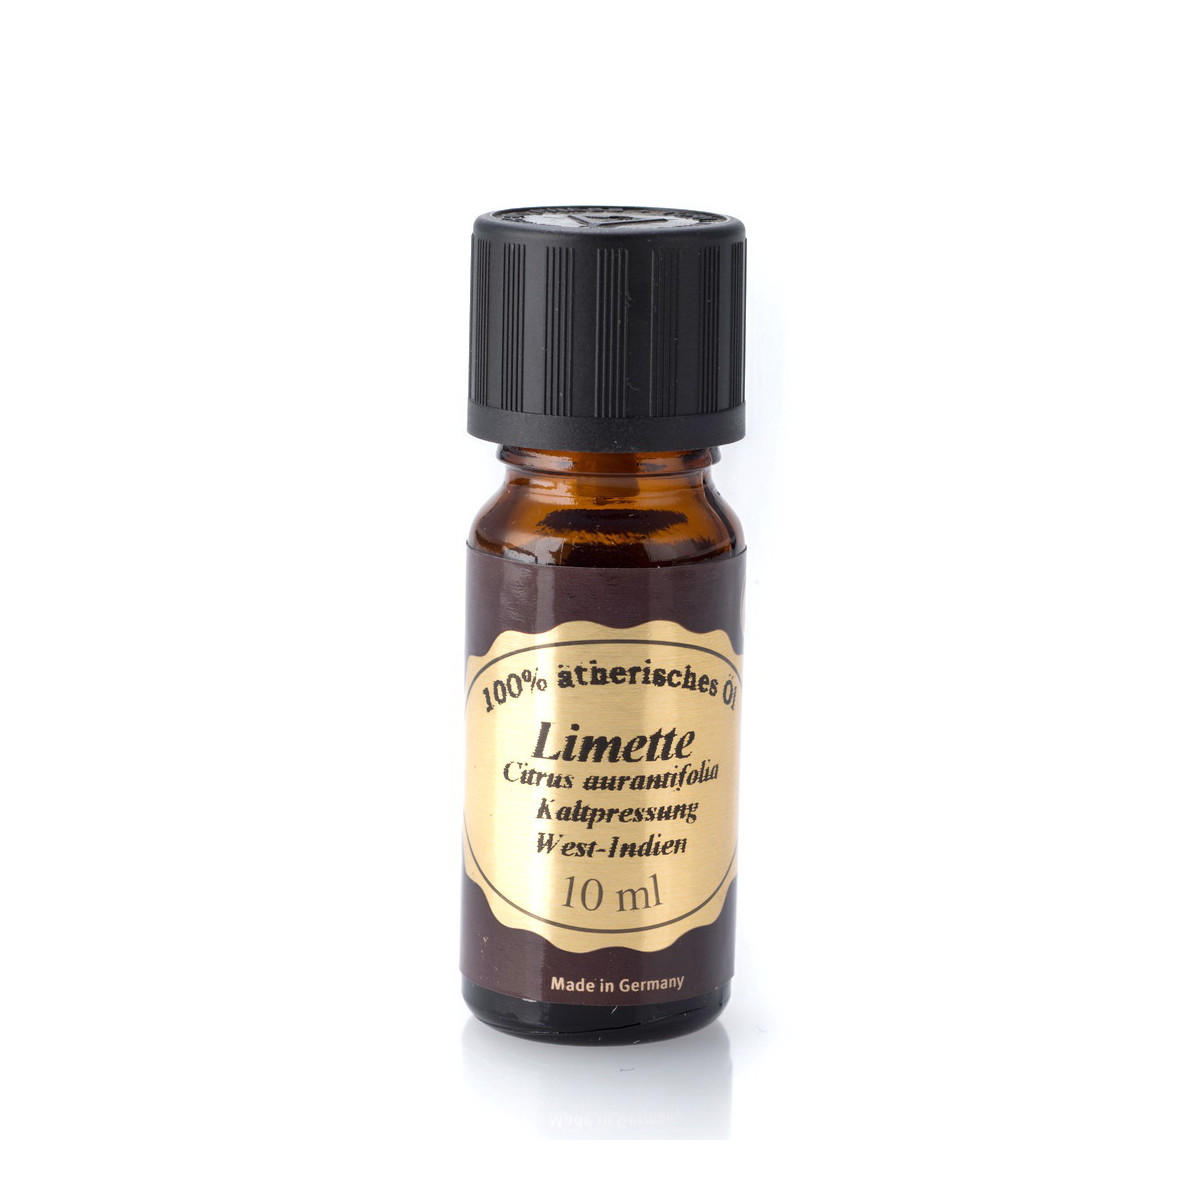 Limette - 10 ml Pajoma 100% ätherisches Öl